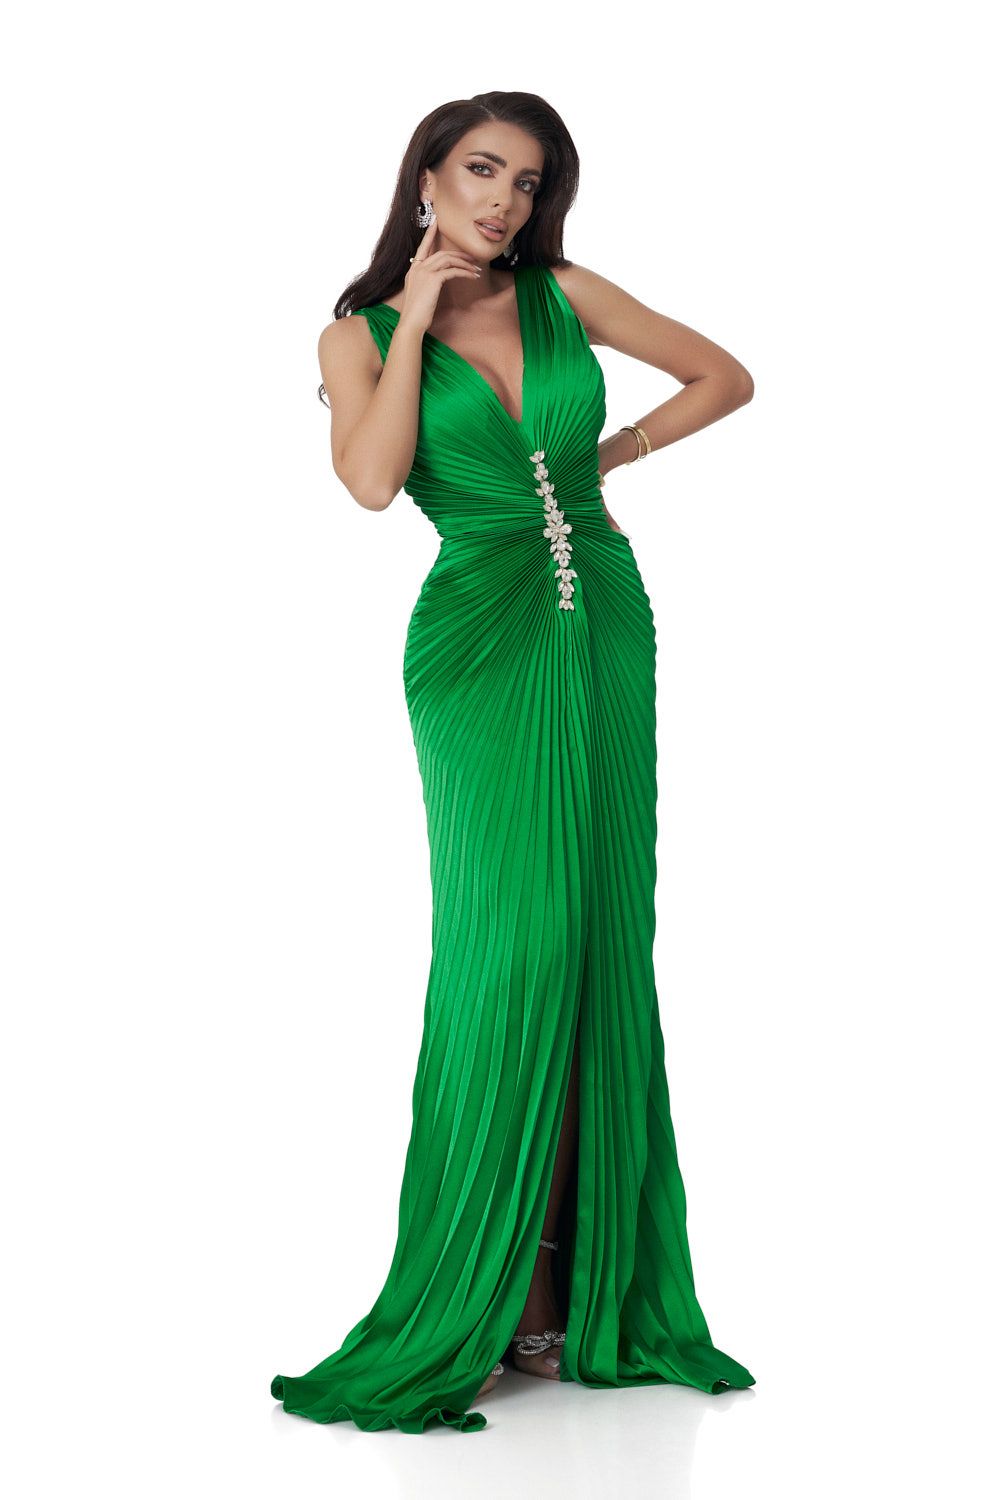 Long green satin veil dress for women Omana Bogas